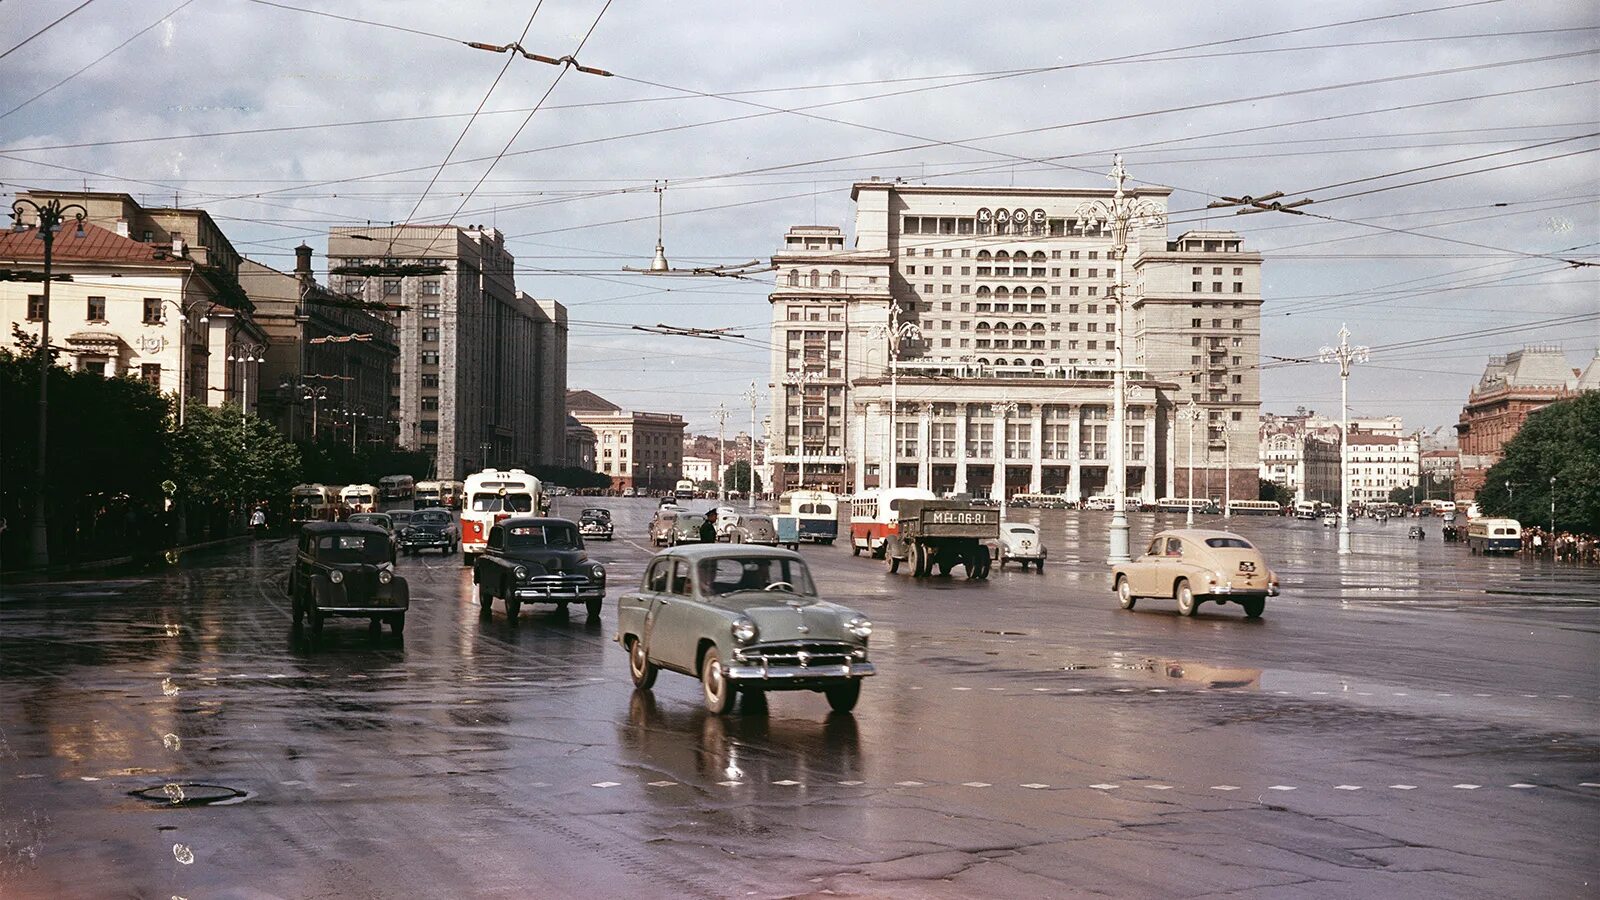 СССР Москва 1960. Москва СССР 1950. Москва в 50-е годы.